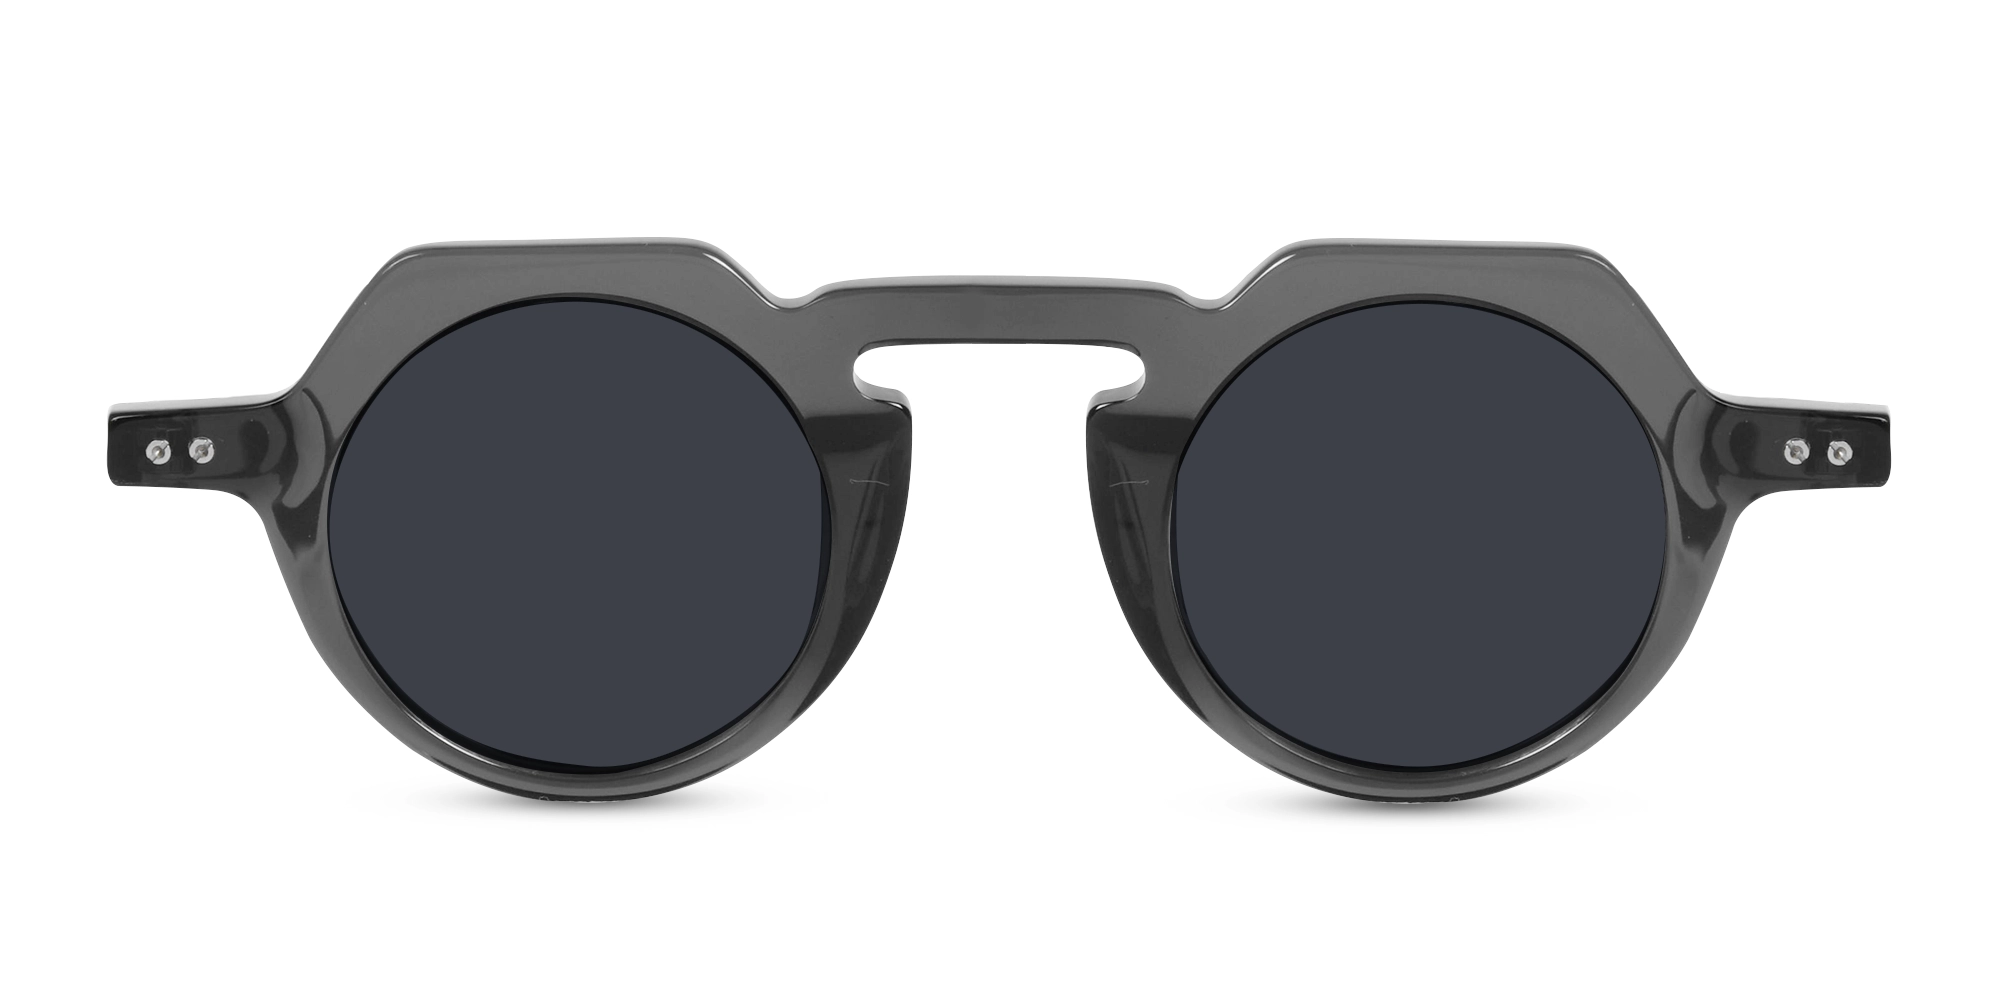 Grey Frame Sunglasses